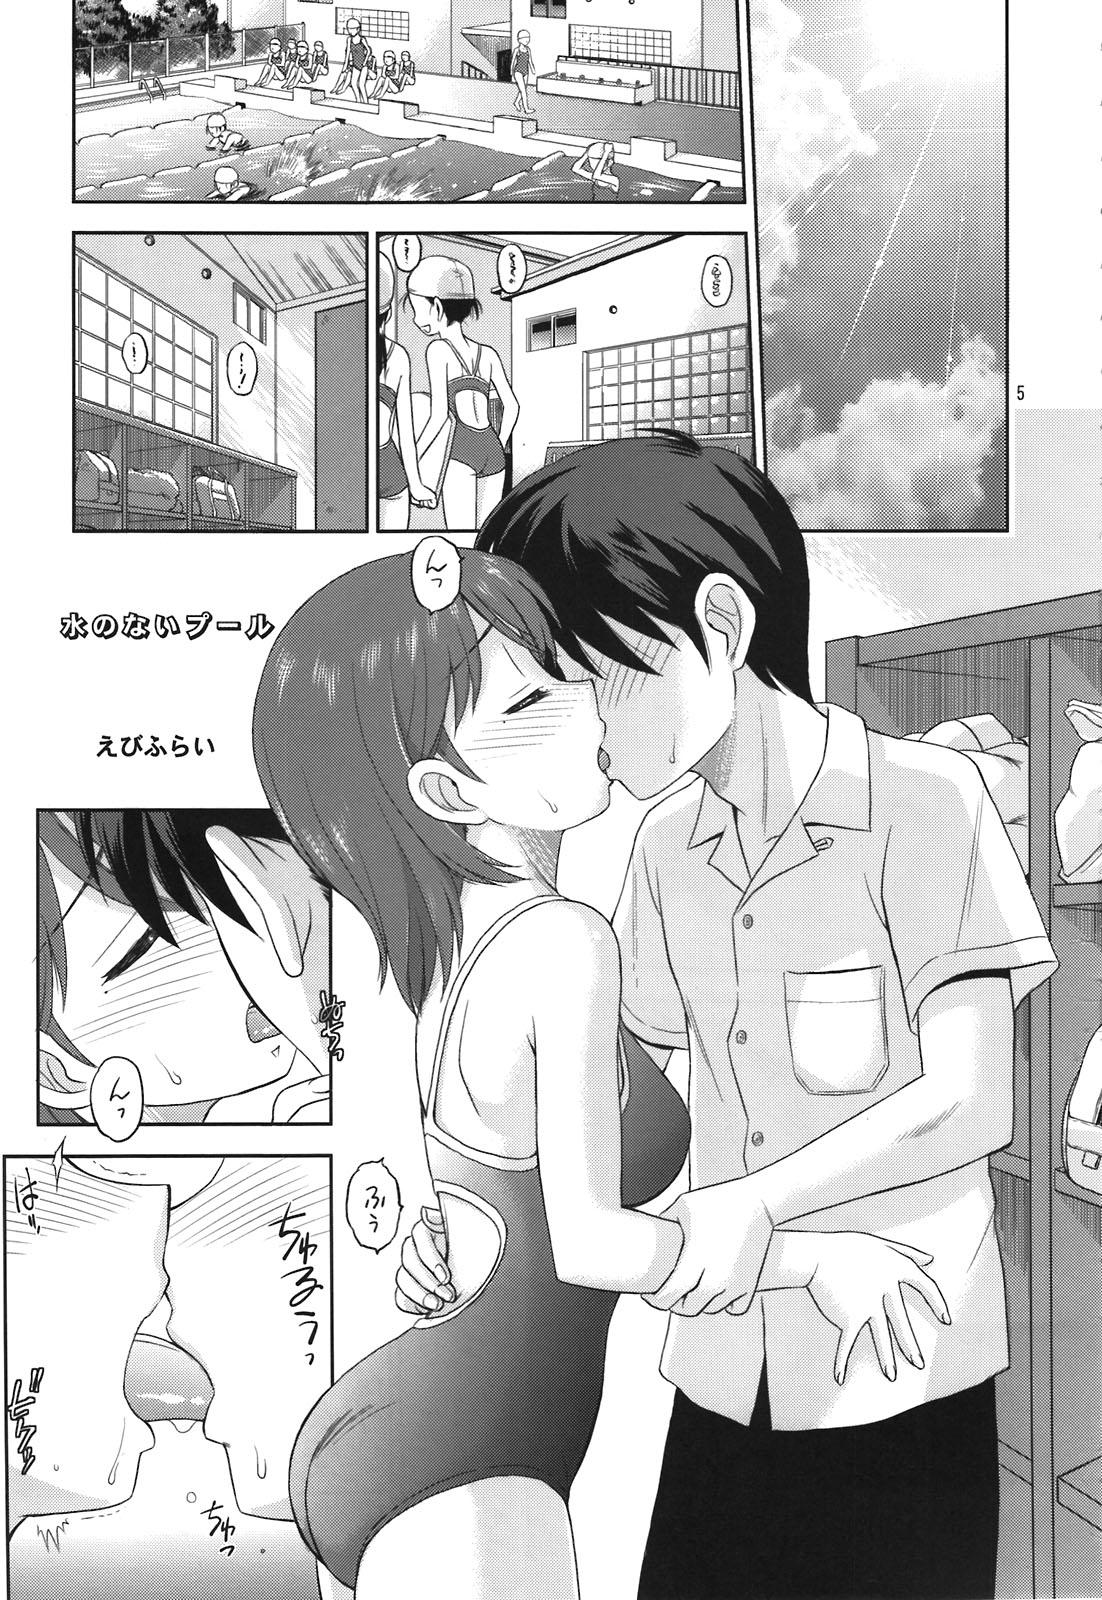 Sexteen Aikotoba wa Nene - Love plus Playing - Page 5